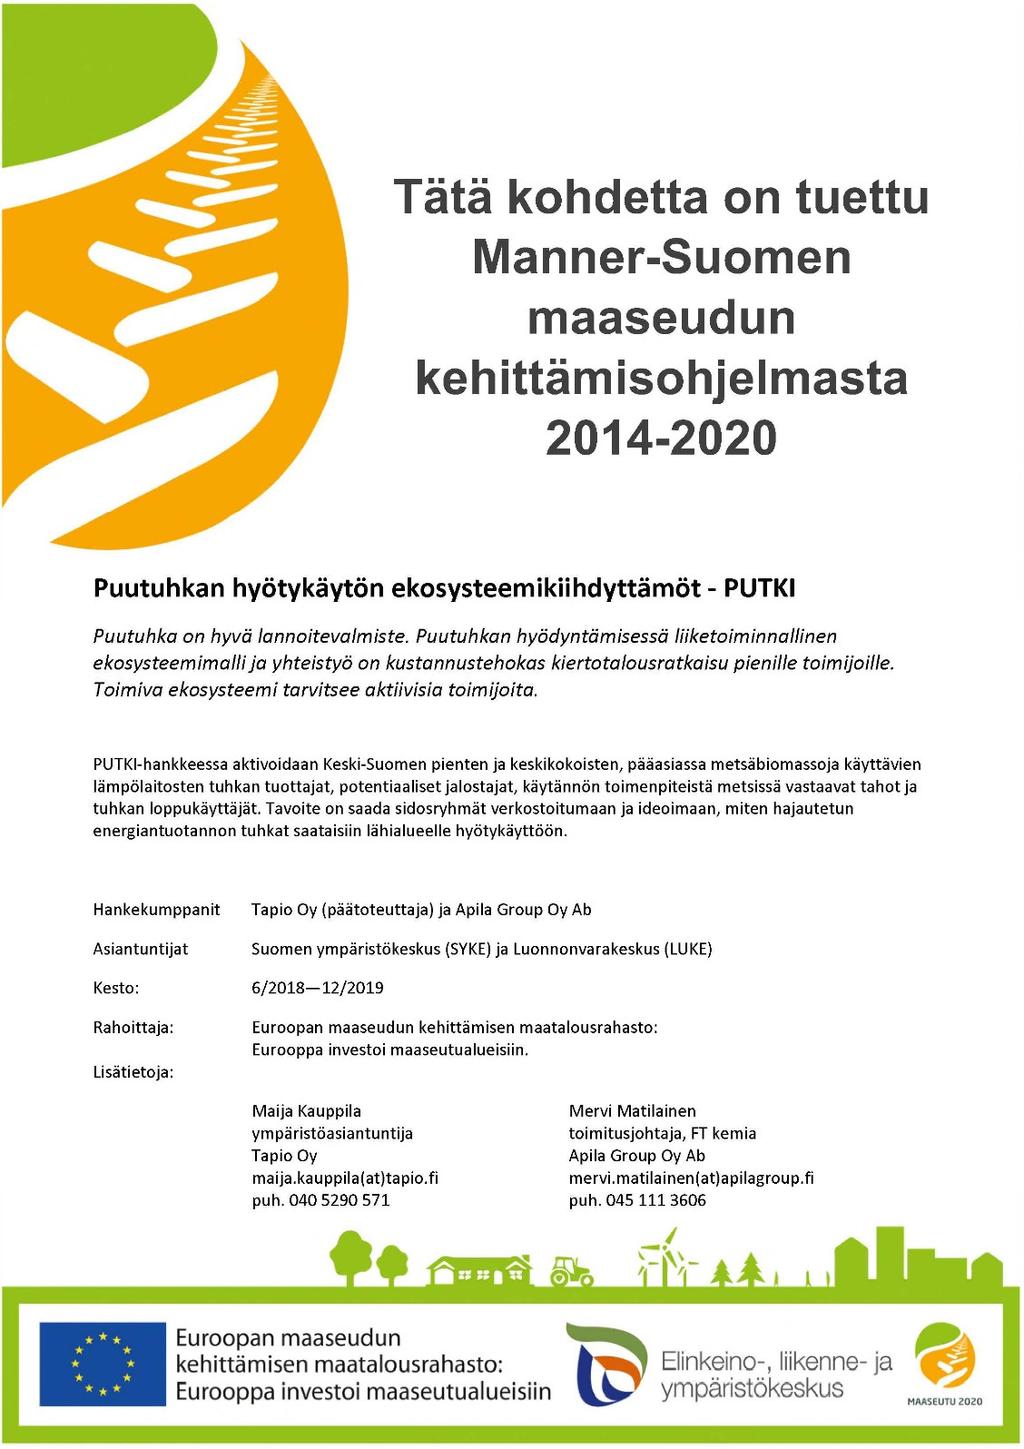 CASE: PUTKI-hanke 2018 2019 hajautetun energian tuotannon puutuhkan hyödyntämiseksi Ekosysteemien luominen lähti liikkeelle Pohjois-Karjalasta